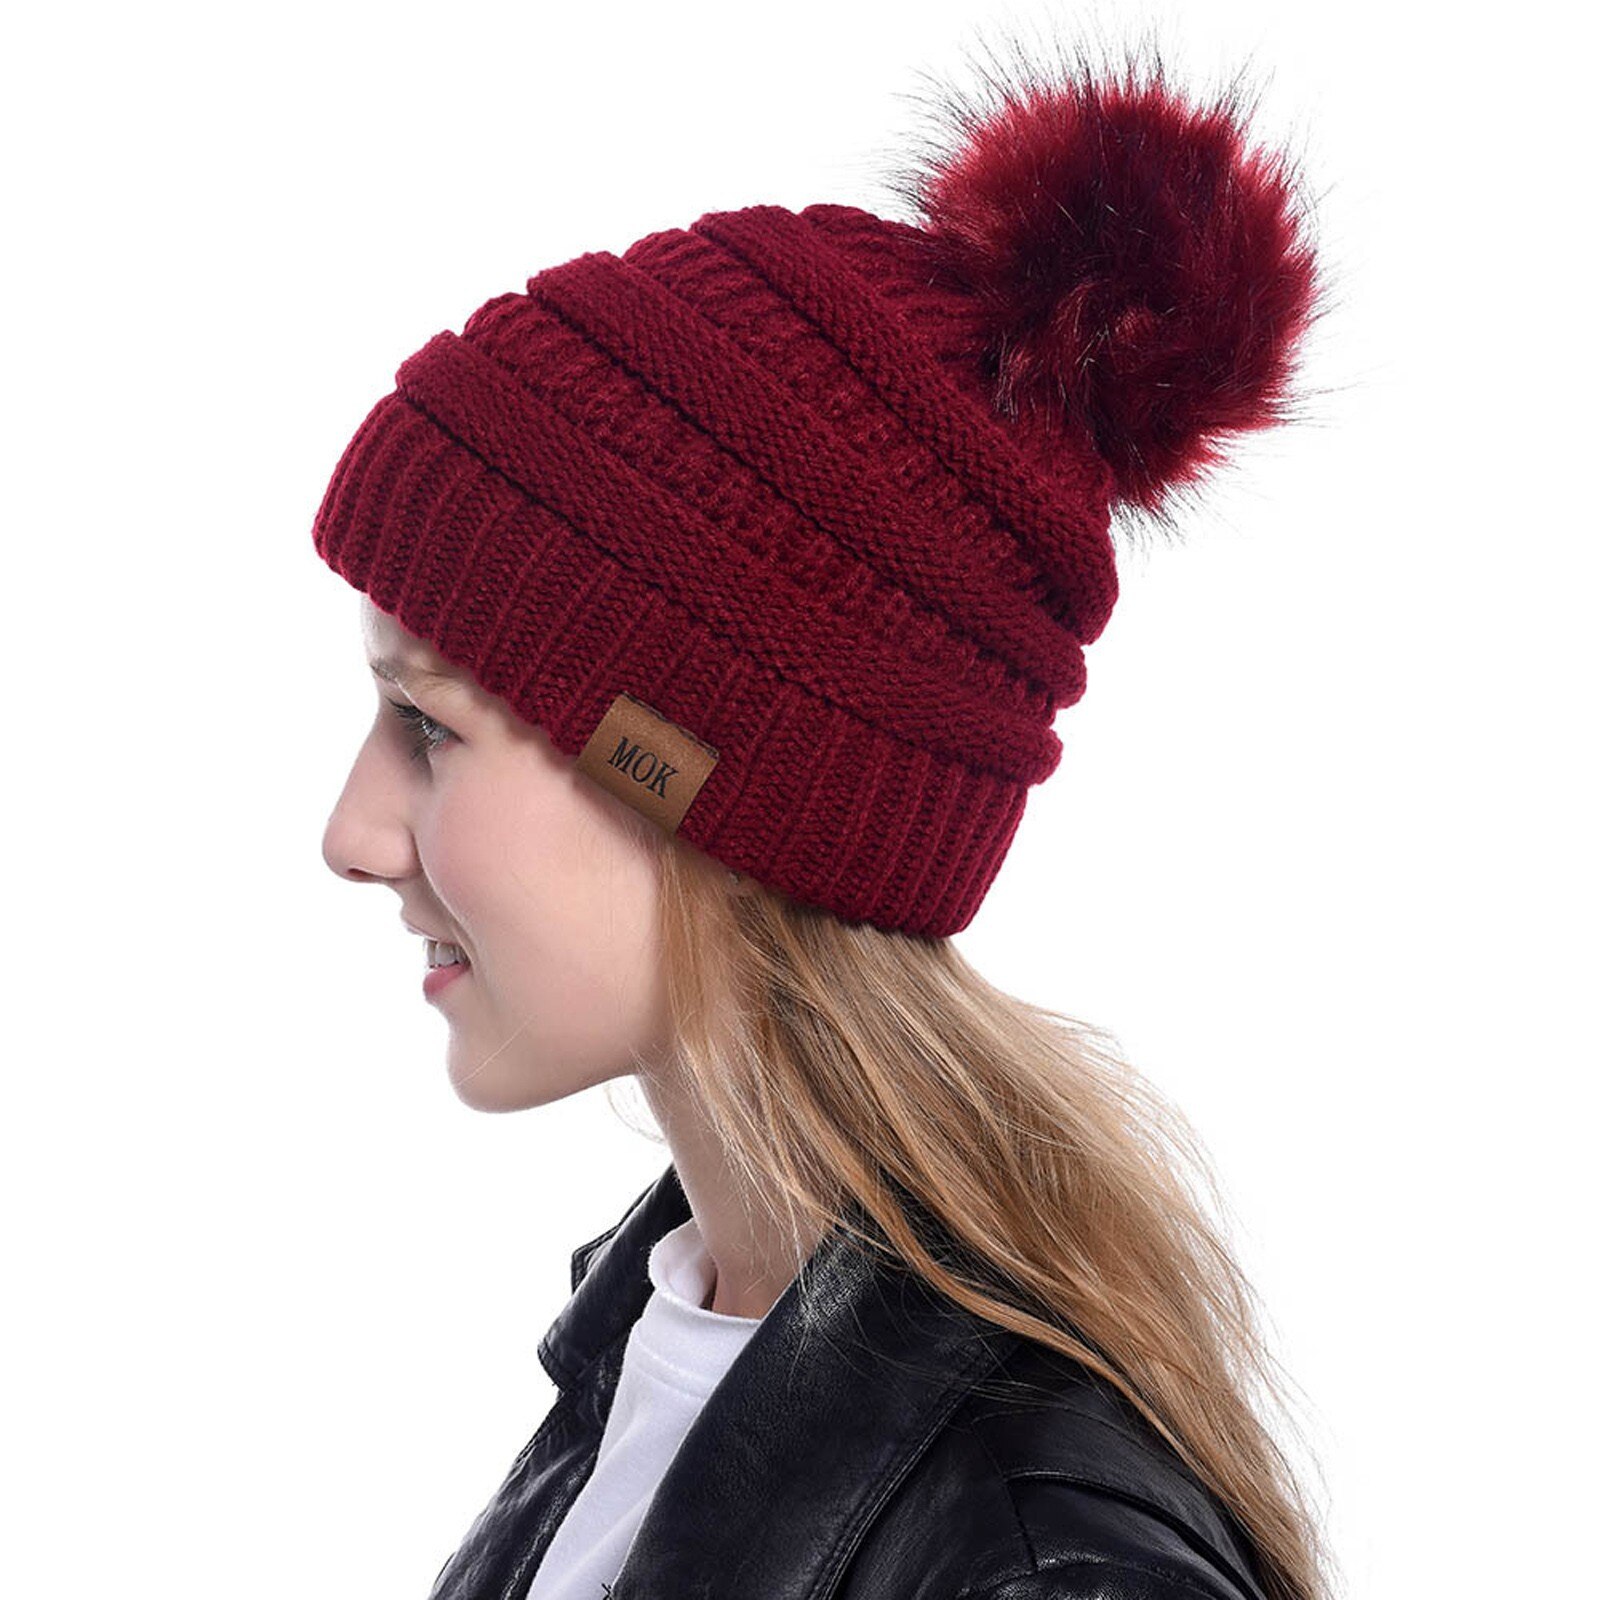 E la moda donna nuova E di alta qualità mantiene caldi cappelli invernali cappello a orlo in lana lavorato a maglia morbido delicato sulla pelle, traspirante